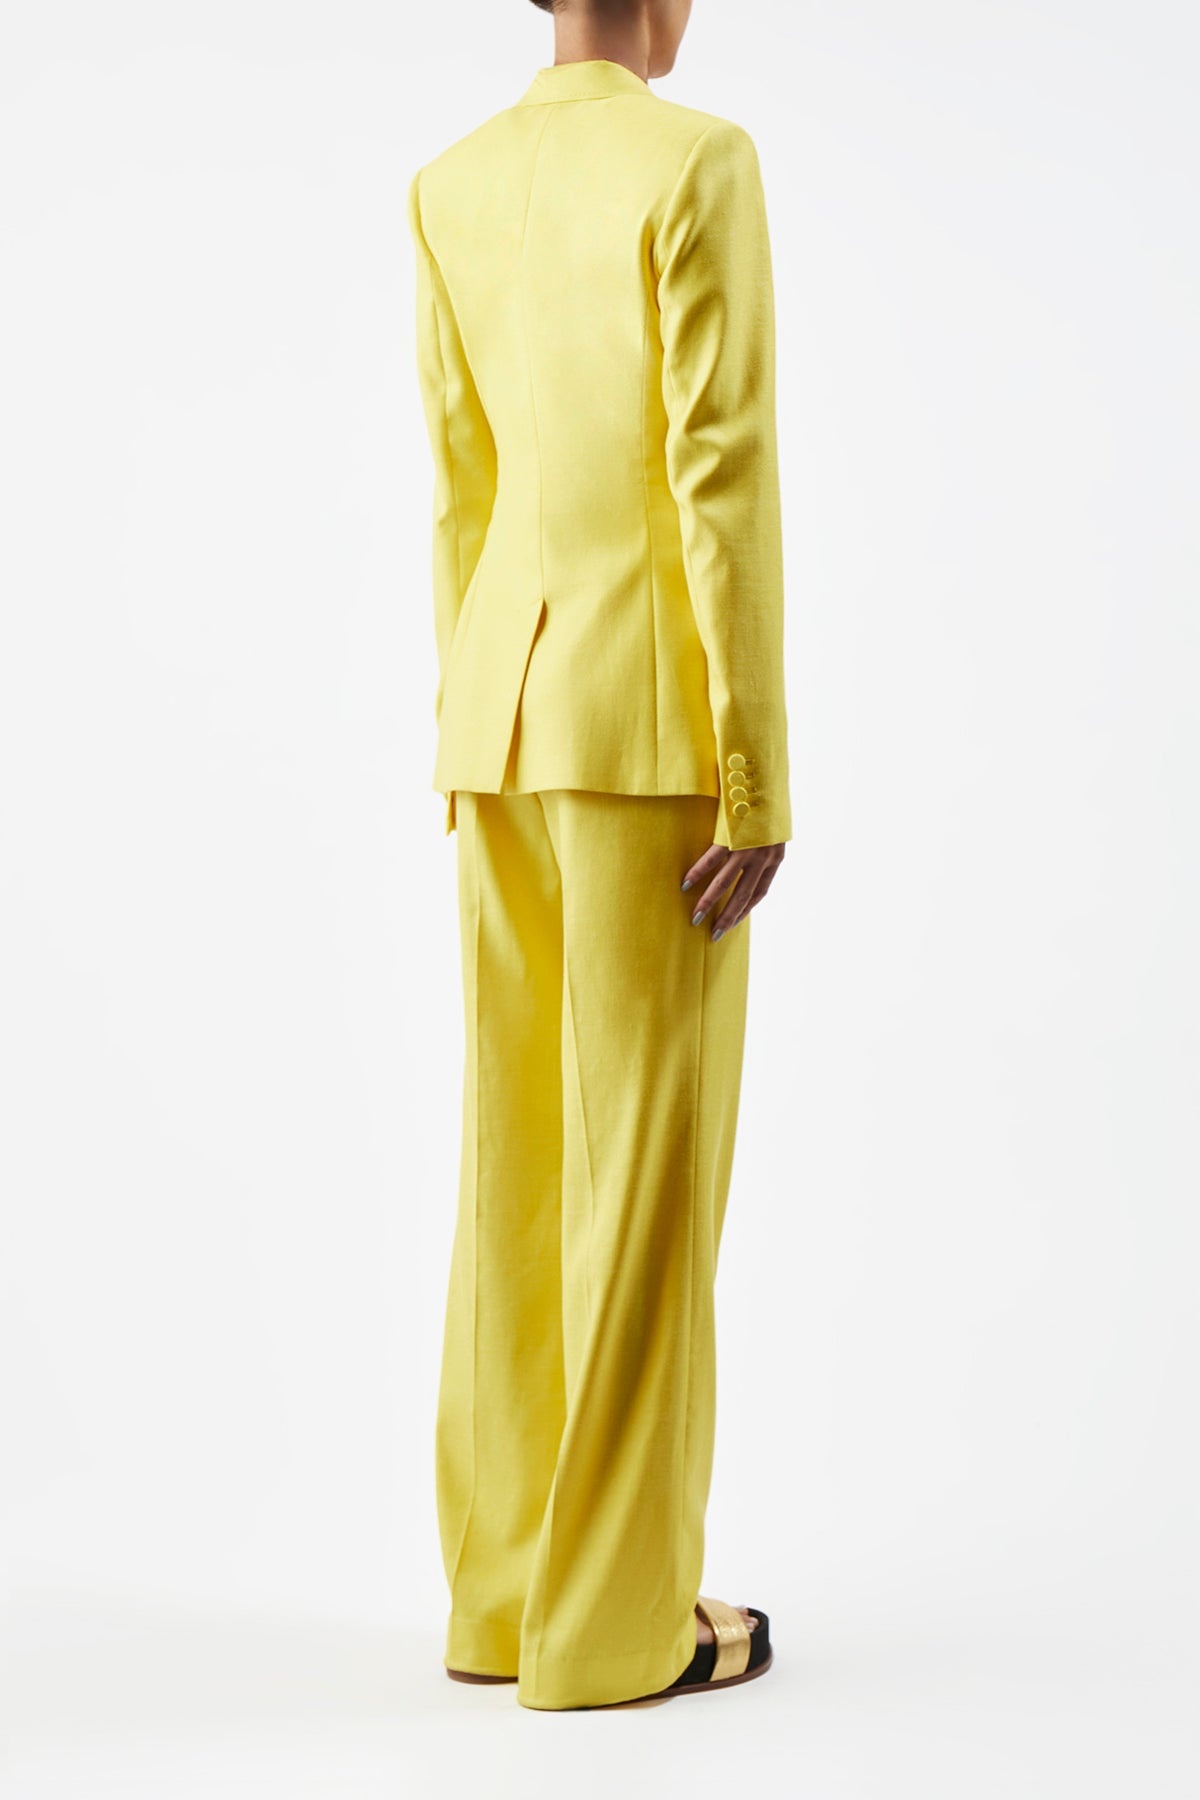 Vesta Pant in Cadmium Yellow Silk Wool with Linen - 5